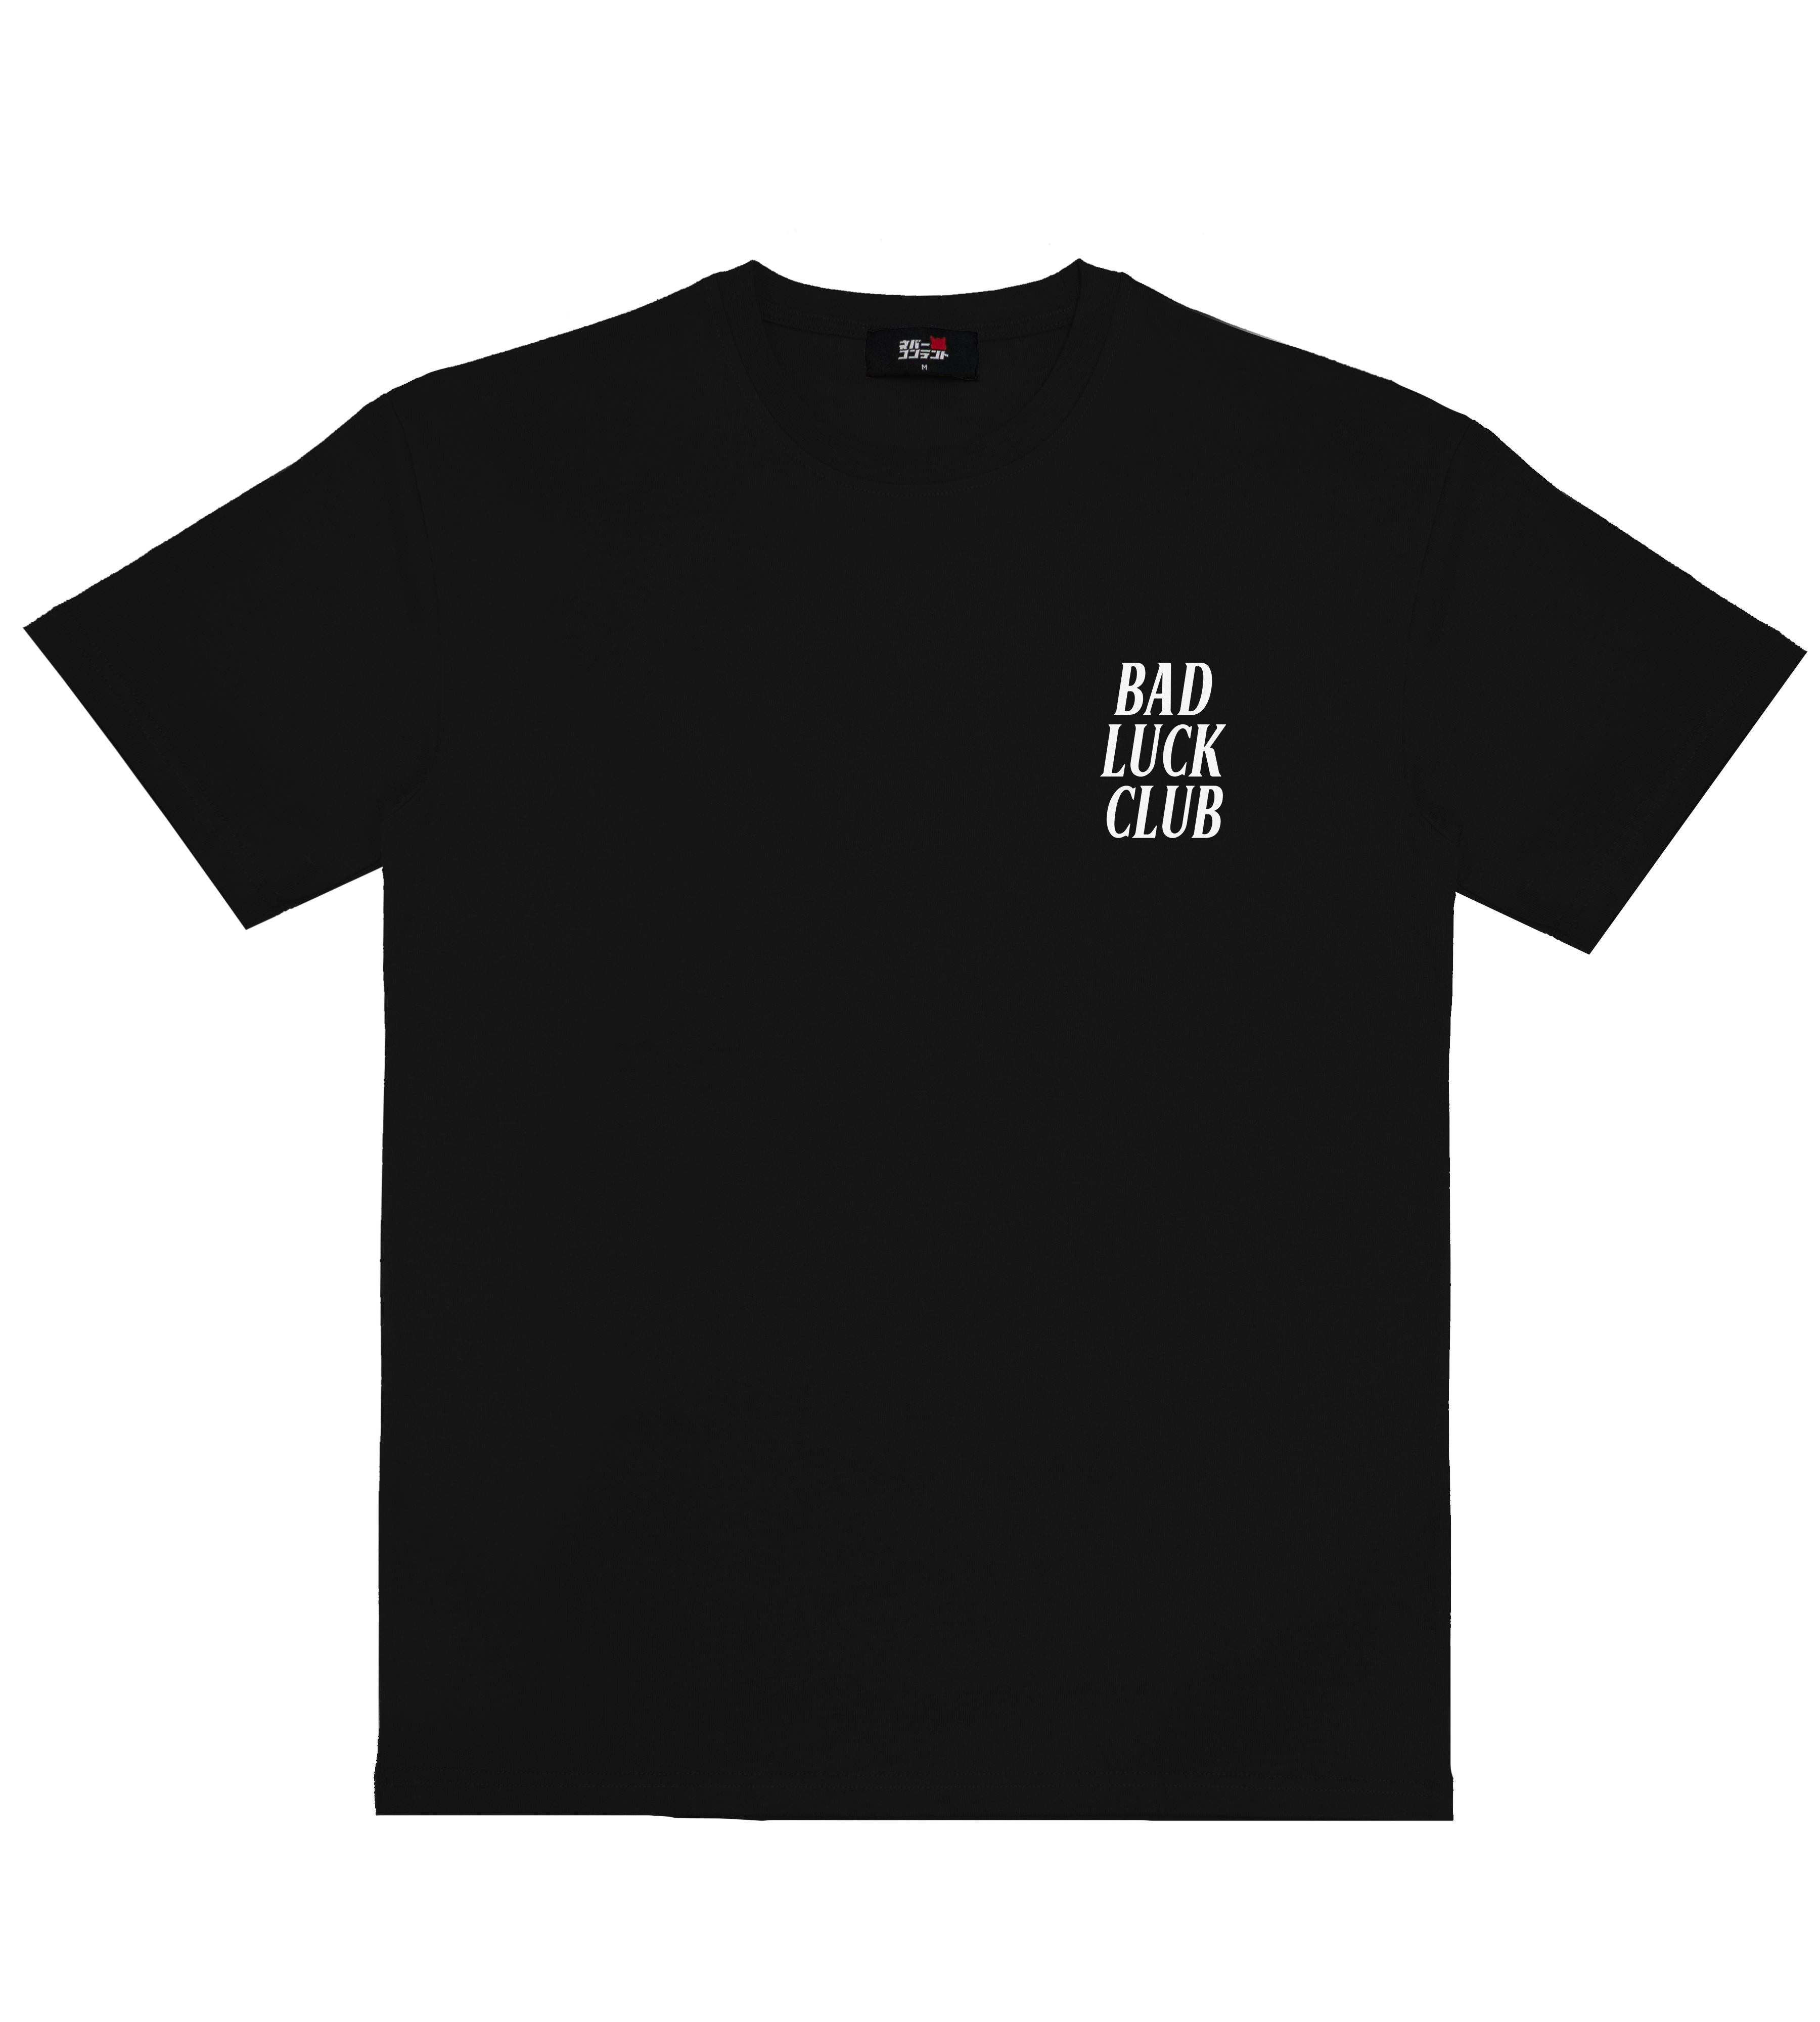 Bad Luck Club! - Black Shirt